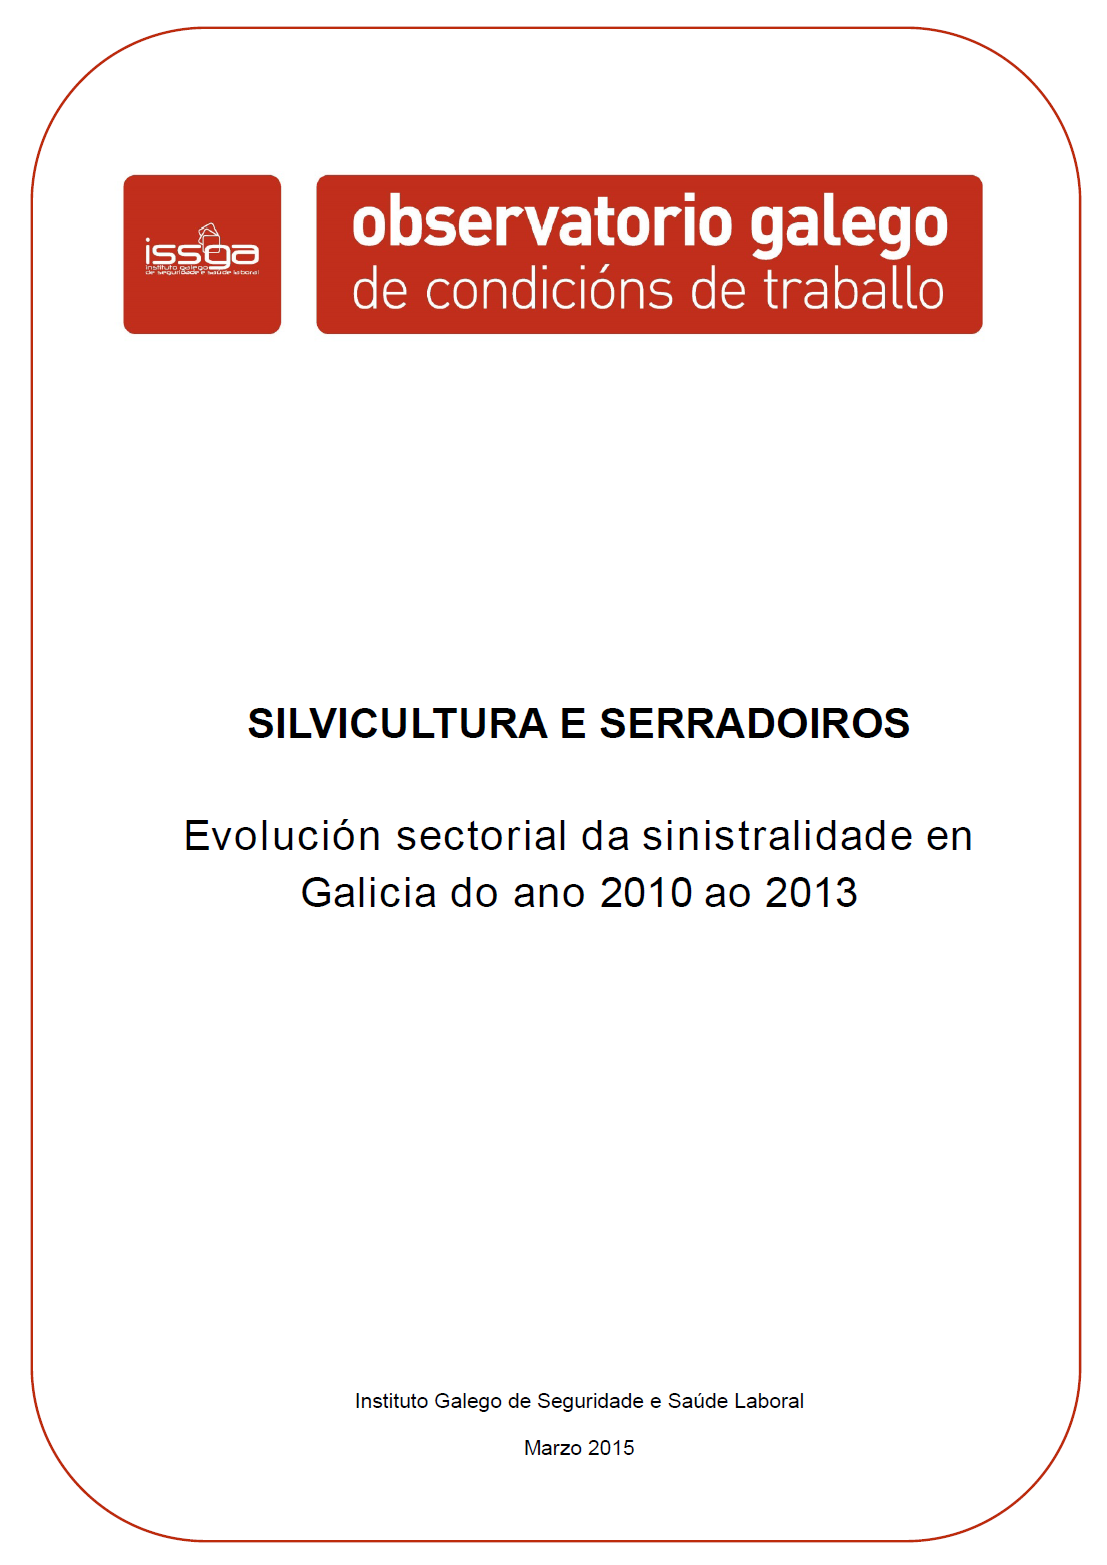 Silvicultura y aserraderos. Evolución sectorial de la siniestralidad en Galicia del año 2010 al 2013